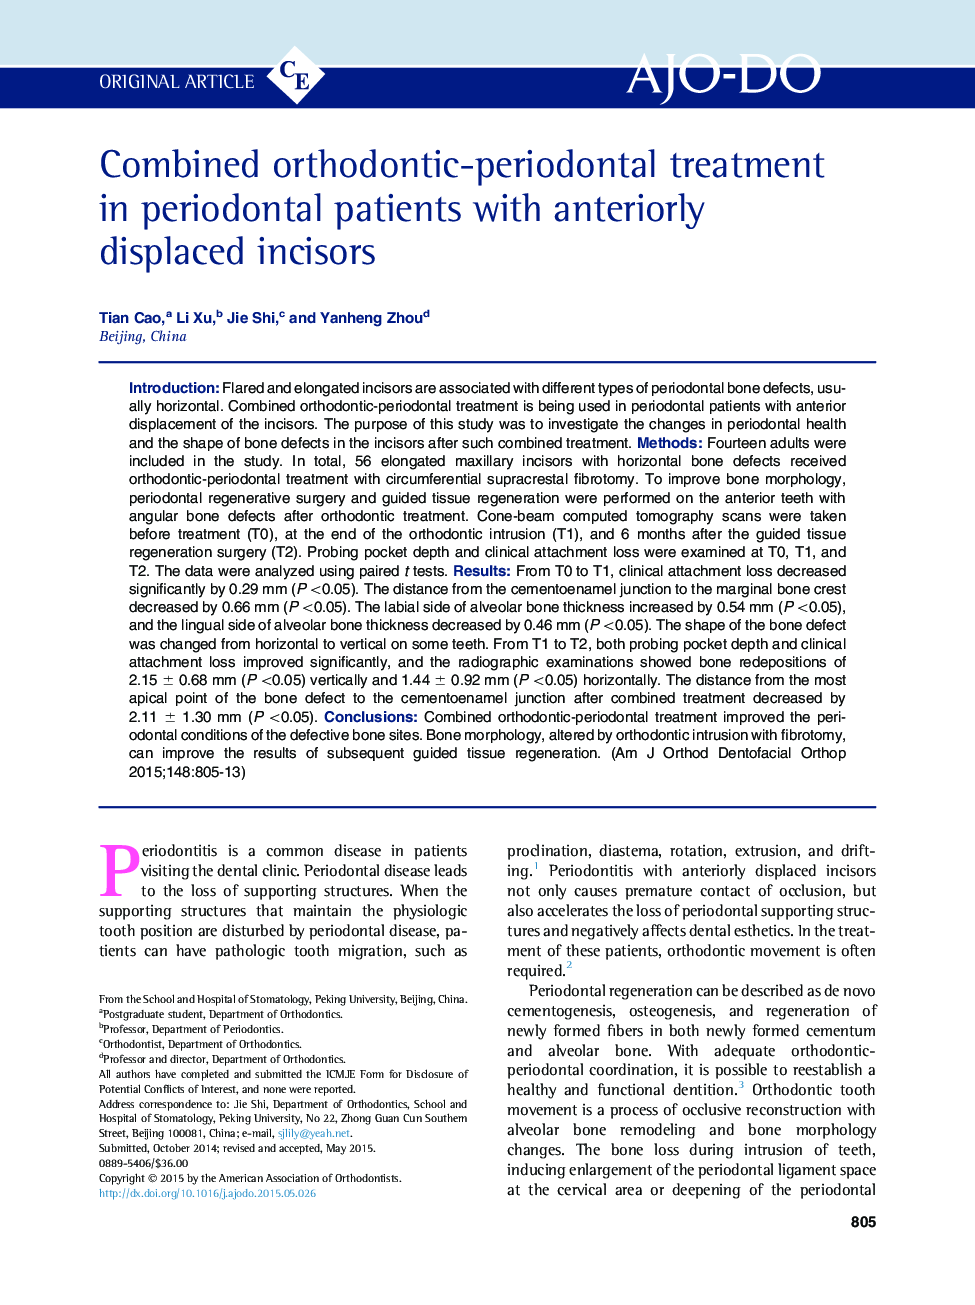 درمان ارتودنسی - پریودنتال در بیماران مبتلا به پریودنتال با دندانهای قدامی آویزان 